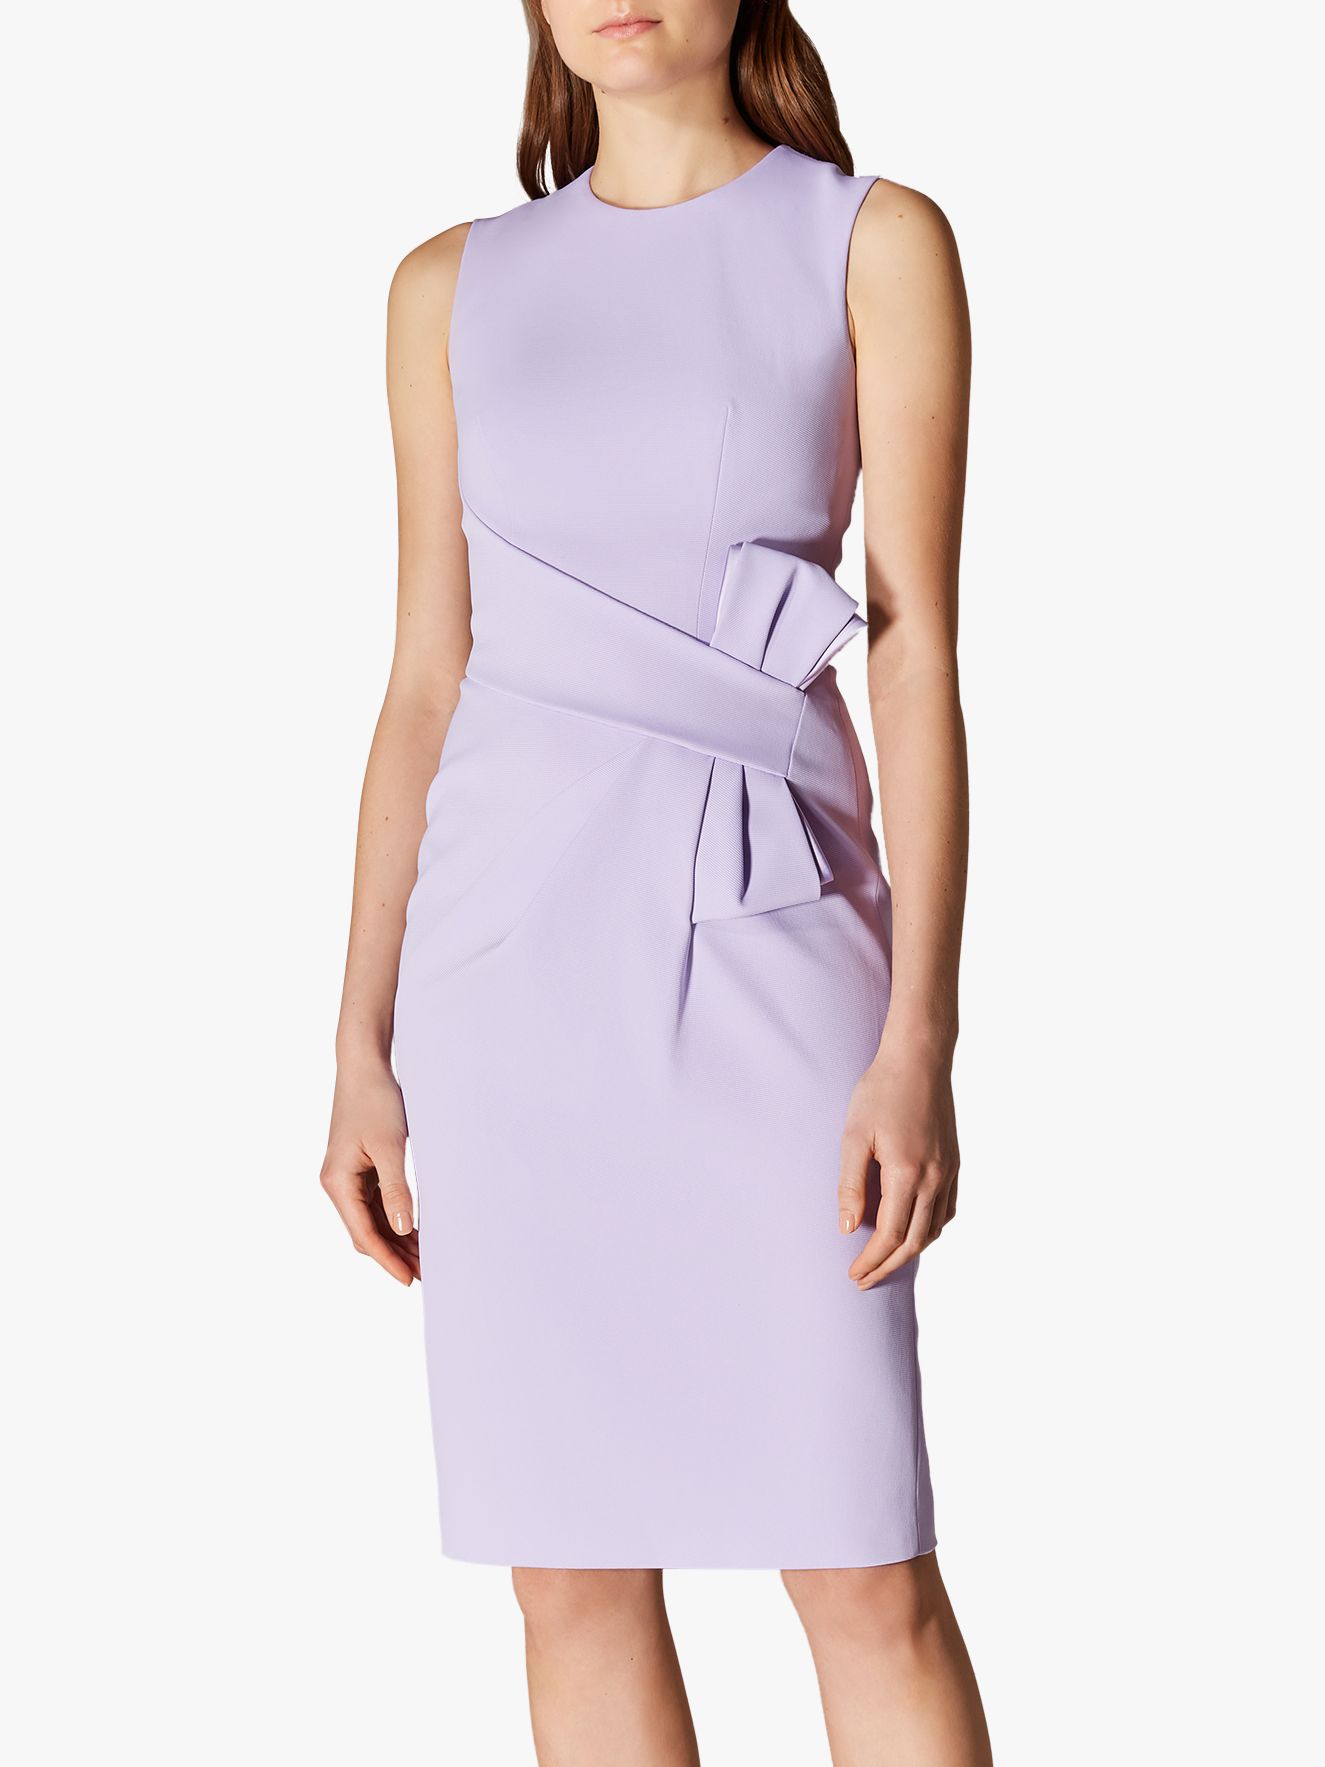 Karen Millen Bow Front Dress, Lilac, 6